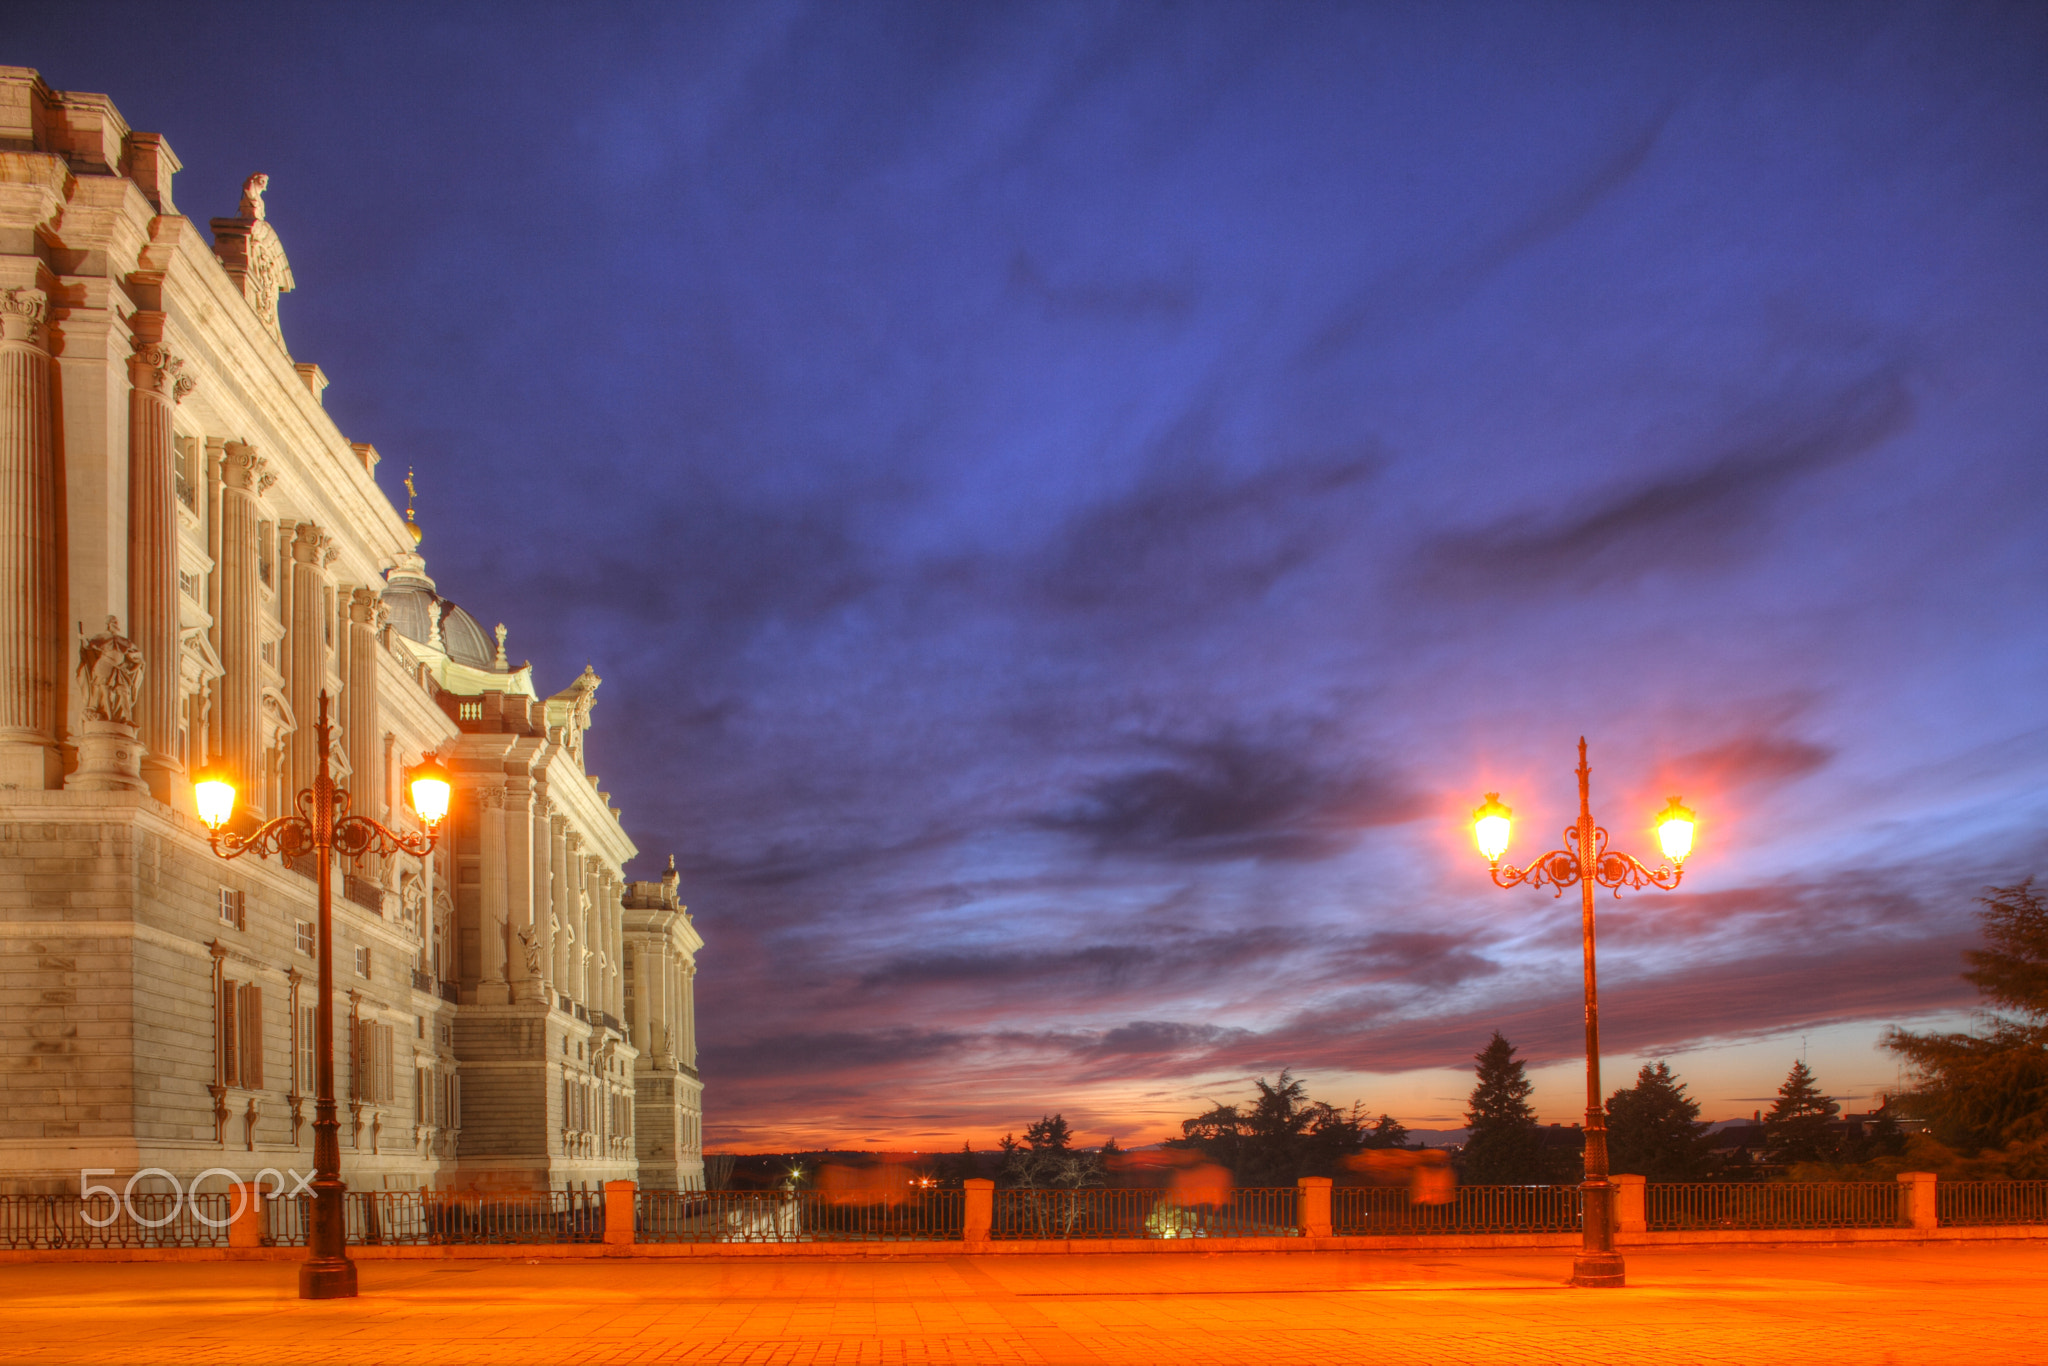 Madrid : Palacio Real at dusk